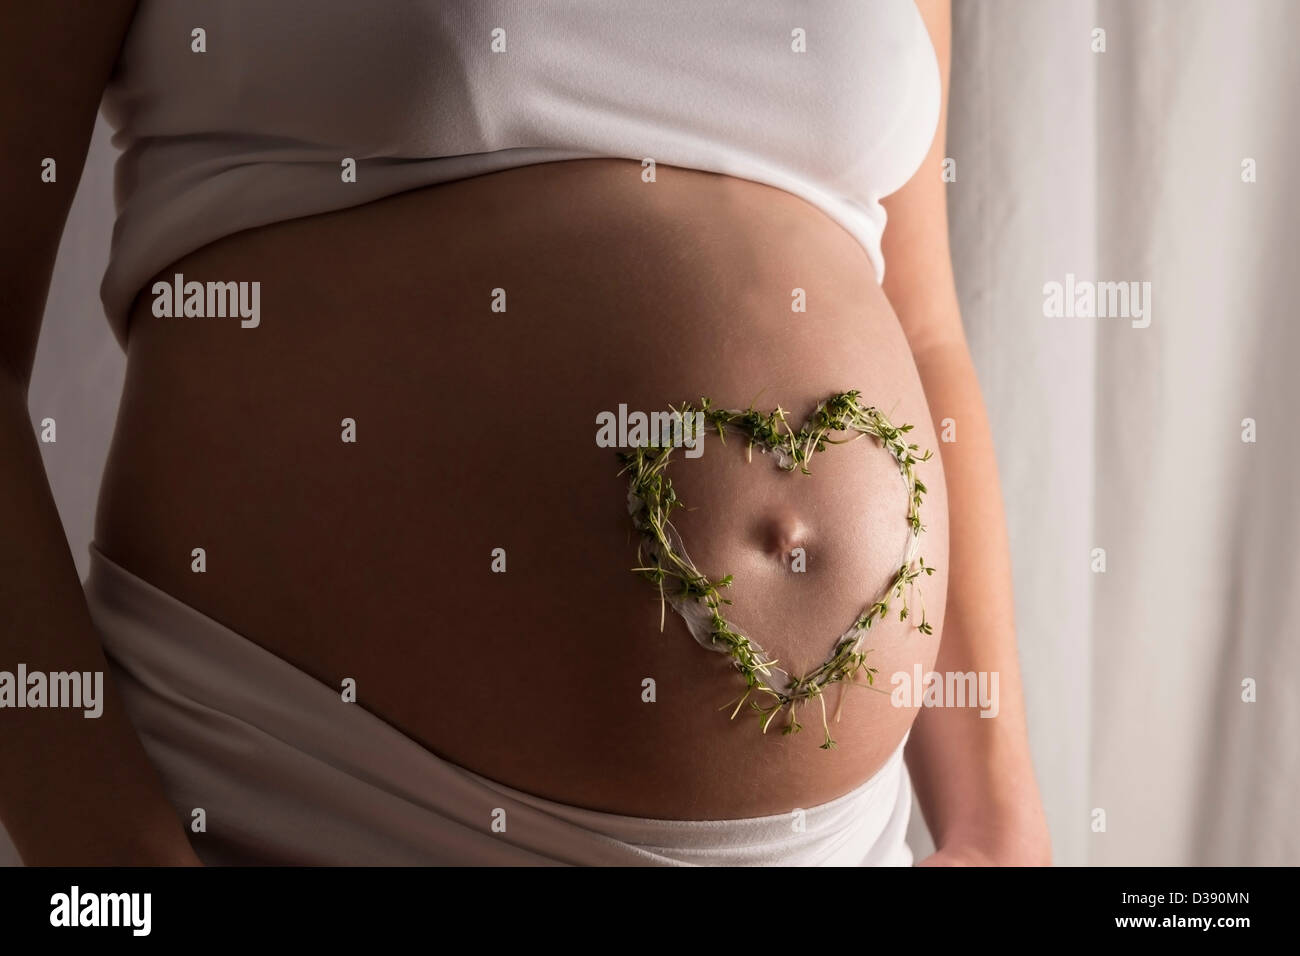 Junge Frau mit weißen Kleidern und eine Creme und Kresse Herzen auf ihrem Baby-Bauch Stockfoto